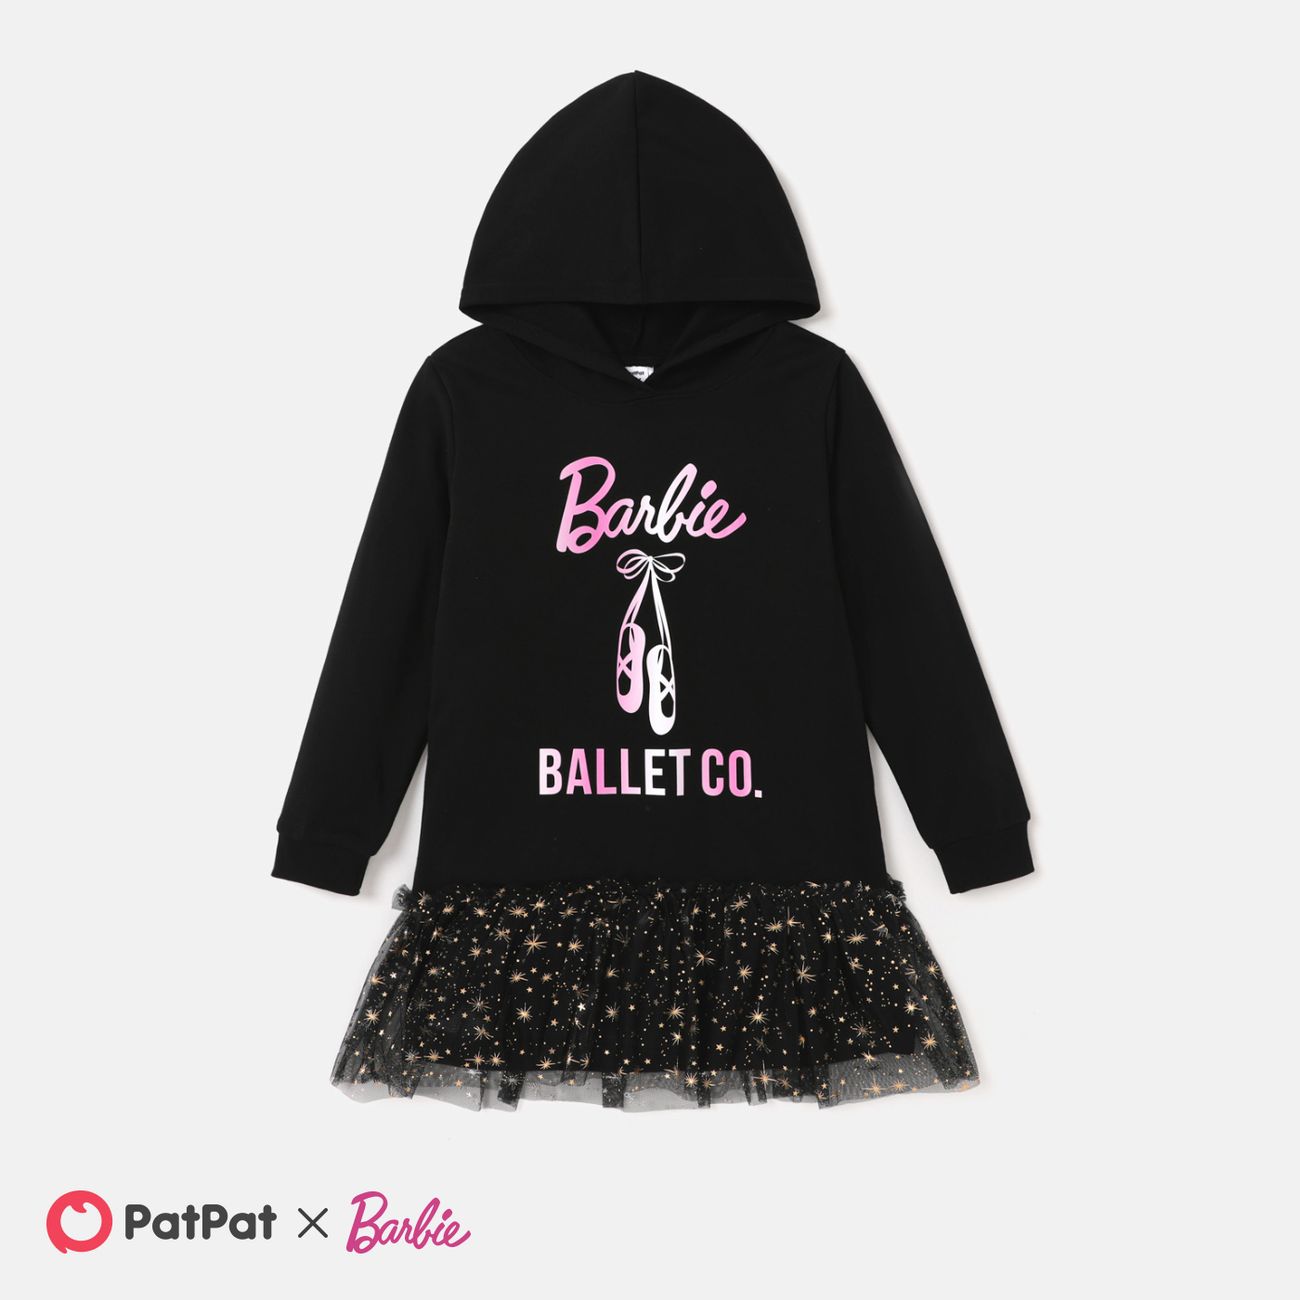 Barbie Bambini Ragazza Con cappuccio Lettere Vestiti Solo 21,99 € PatPat  EUR Cellulare